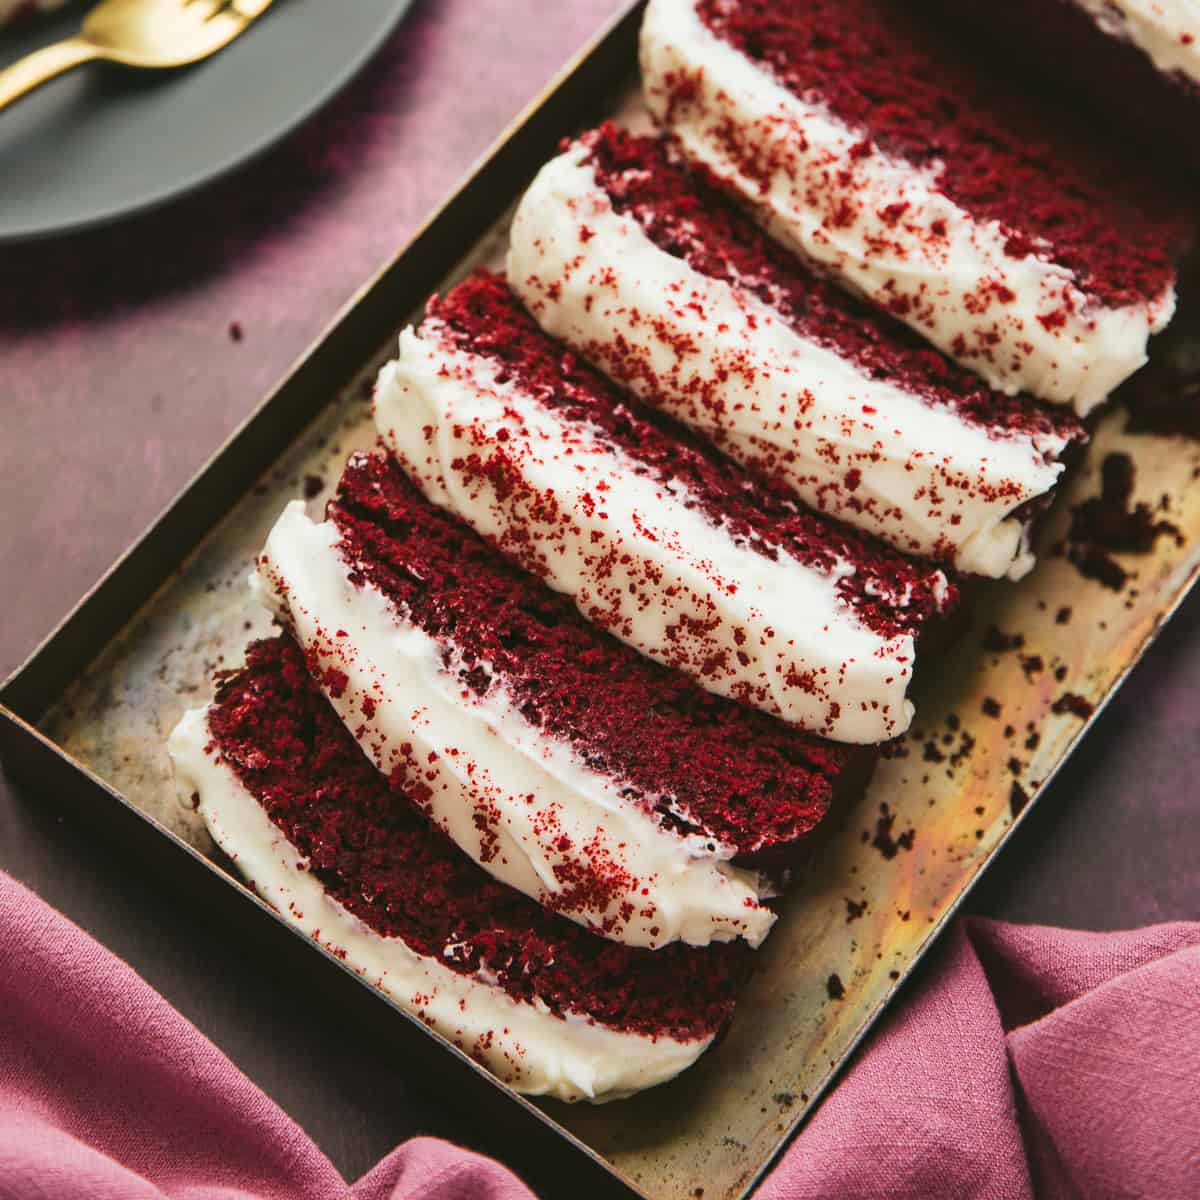 Red Velvet Loaf Cake cut into slices.